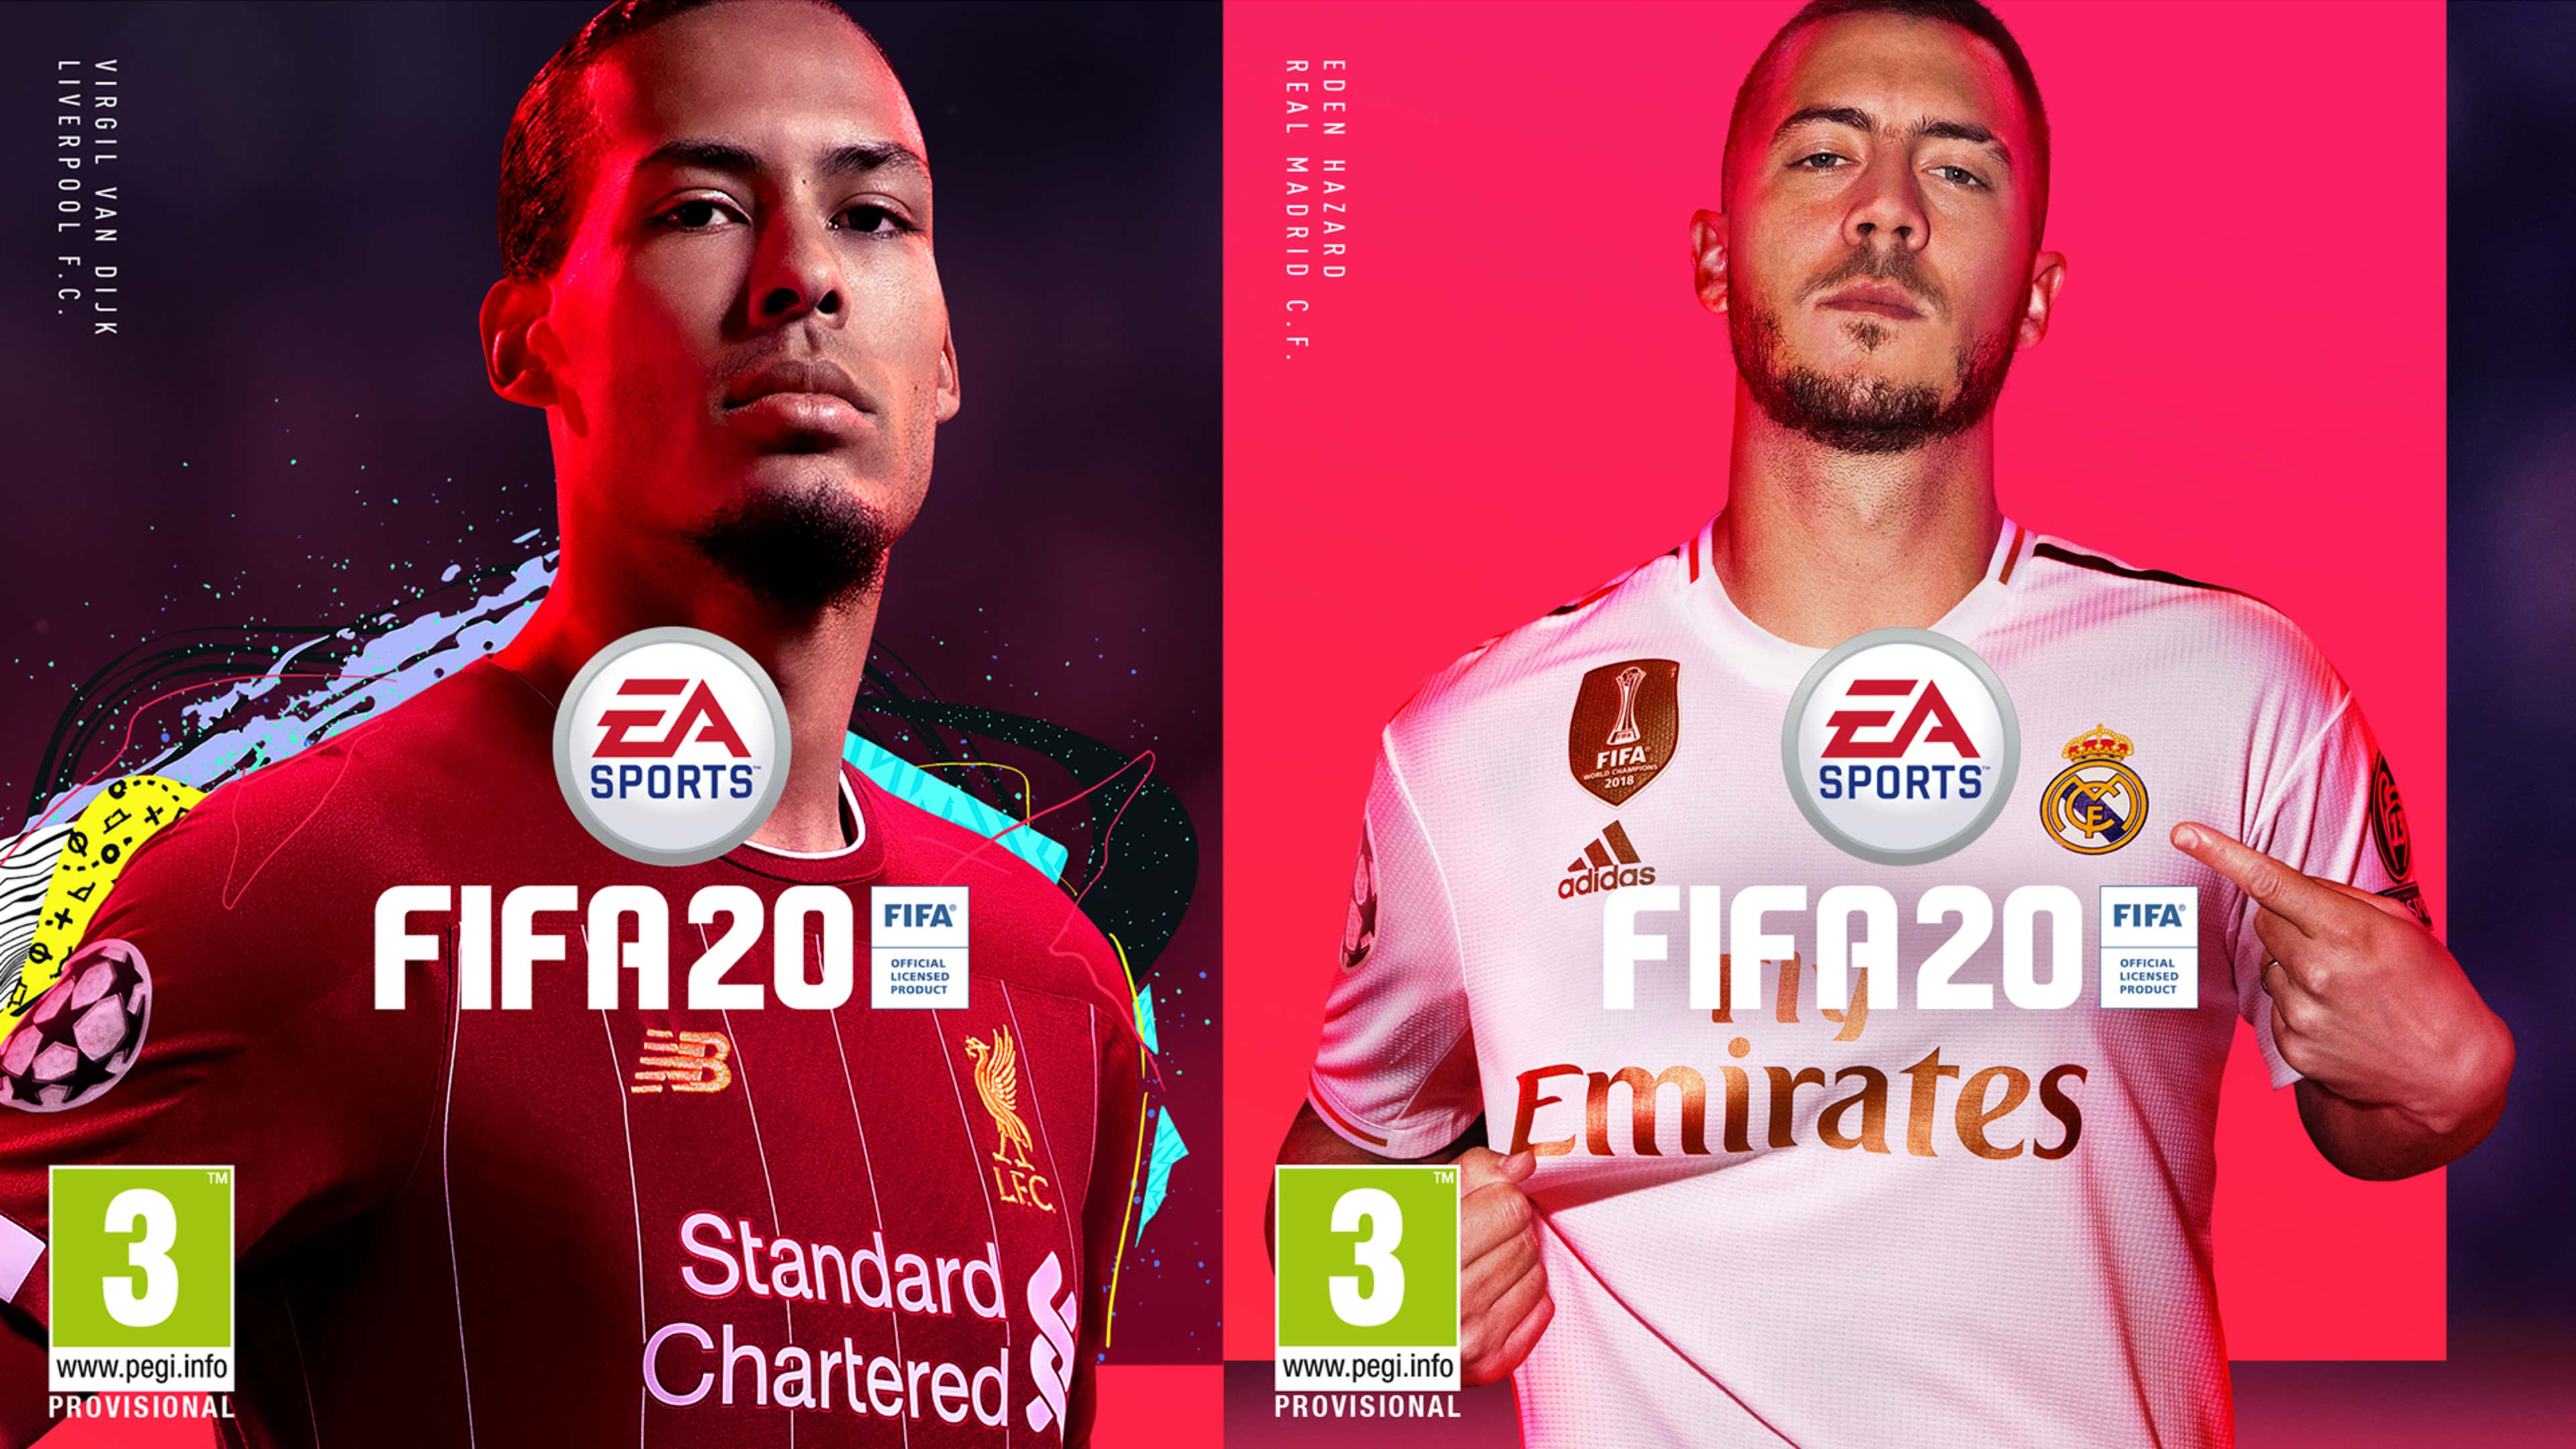 Em FIFA 20 Ultimate Team será mais fácil obter Ícones, diz a EA